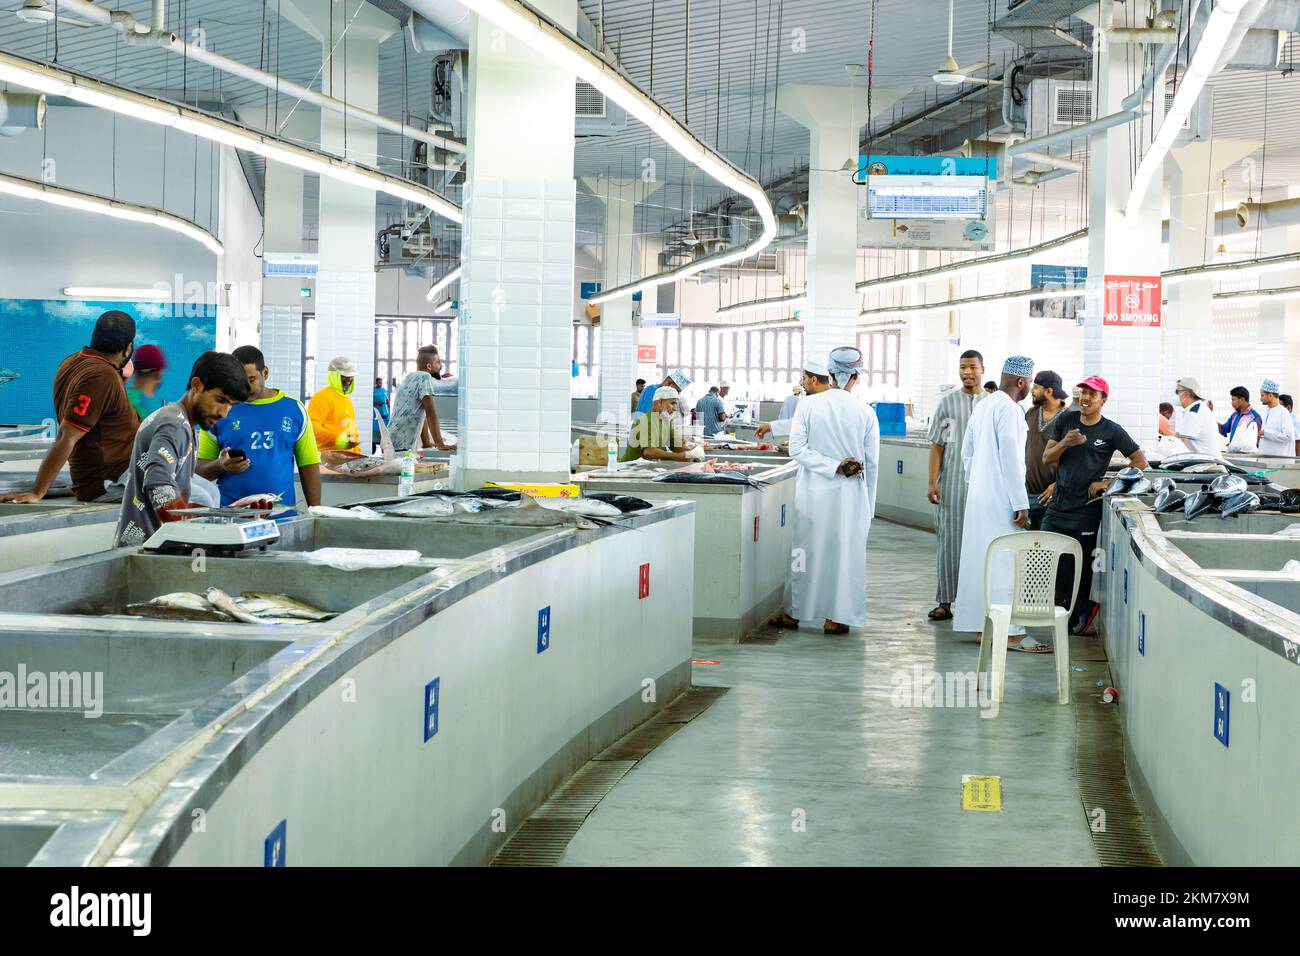 MUTRAH, OMAN - 14 NOVEMBRE 2022 : vendeurs vendant du thon, des sardines et d'autres espèces de poissons au souk de poissons de Mutrah. Oman. Banque D'Images